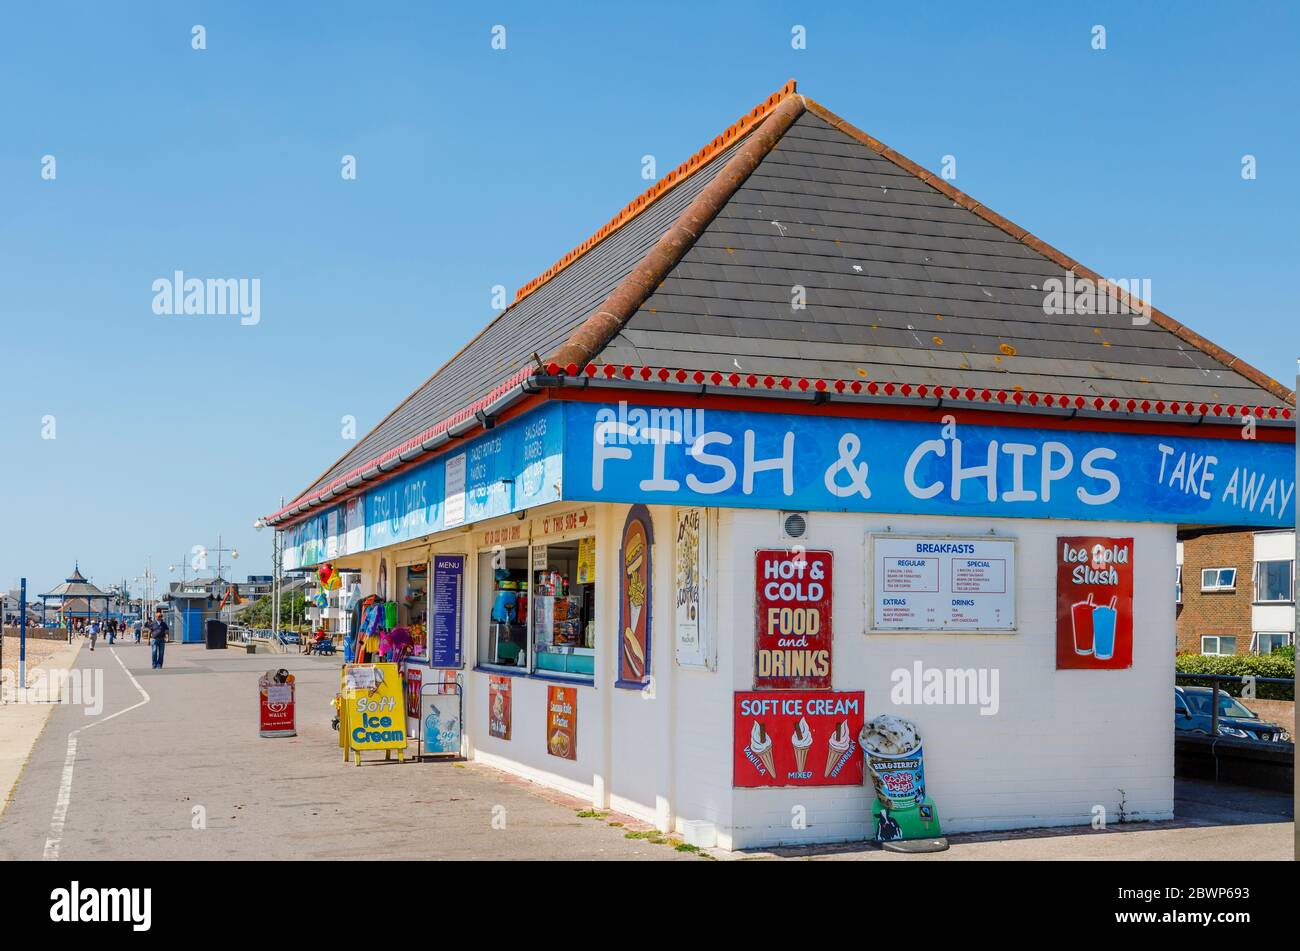 L'Esplanade Beach, ses boutiques et ses snack-bars, sur le front de mer, se trouvent à Bognor Regis, une ville balnéaire de West Sussex, sur la côte sud de l'Angleterre, par une journée ensoleillée Banque D'Images